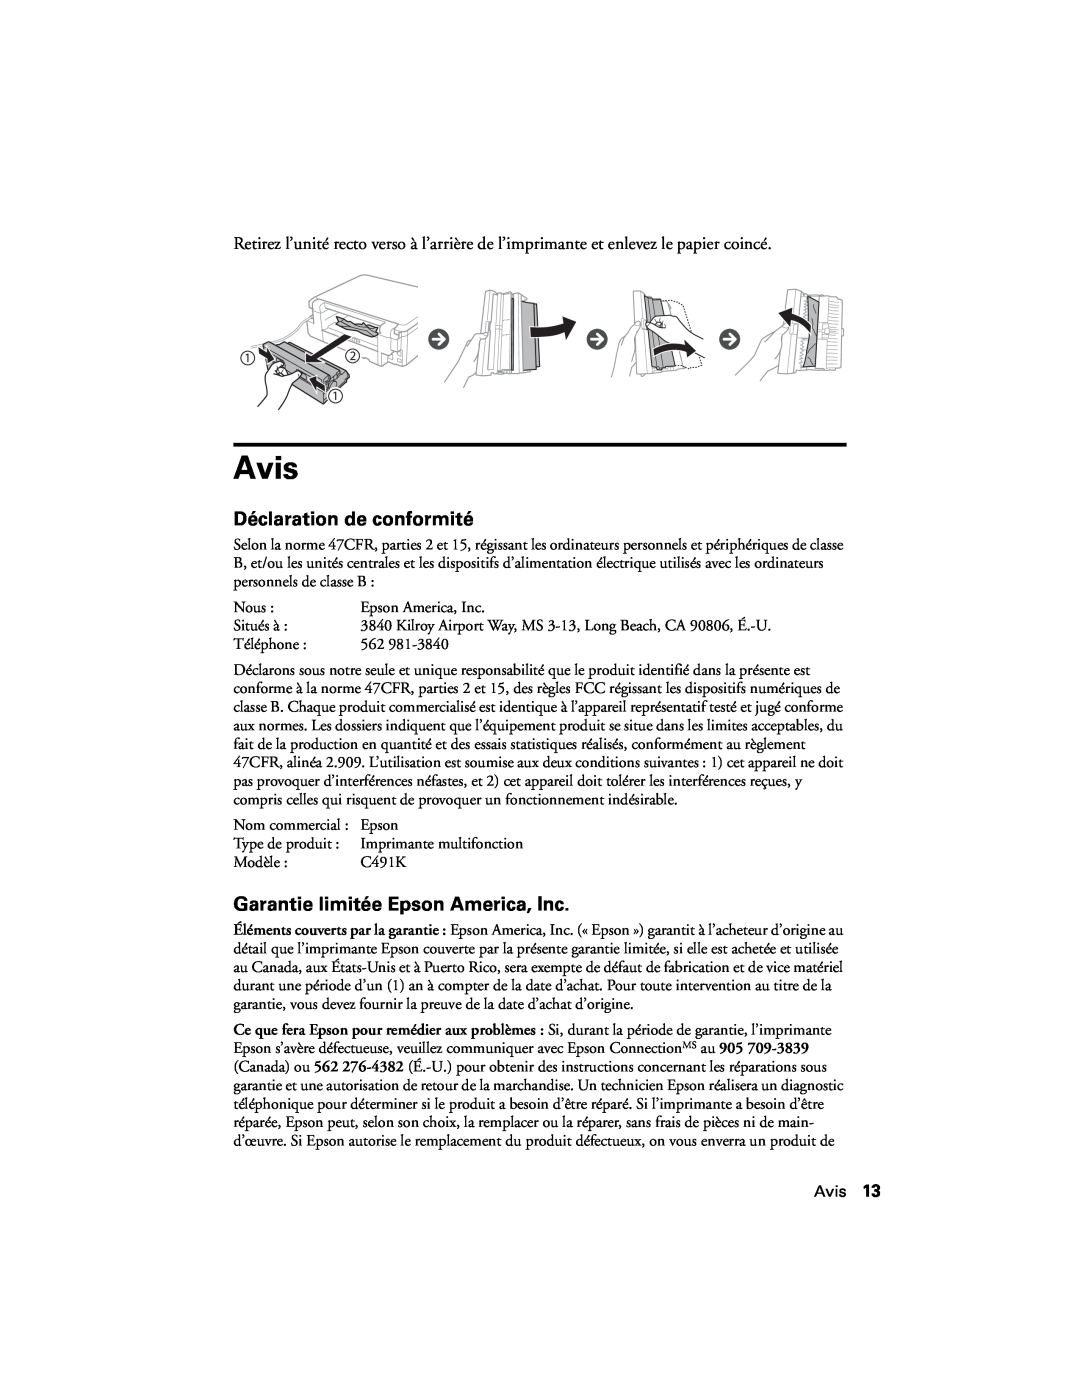 Epson XP-520 manual Avis, Déclaration de conformité, Garantie limitée Epson America, Inc 